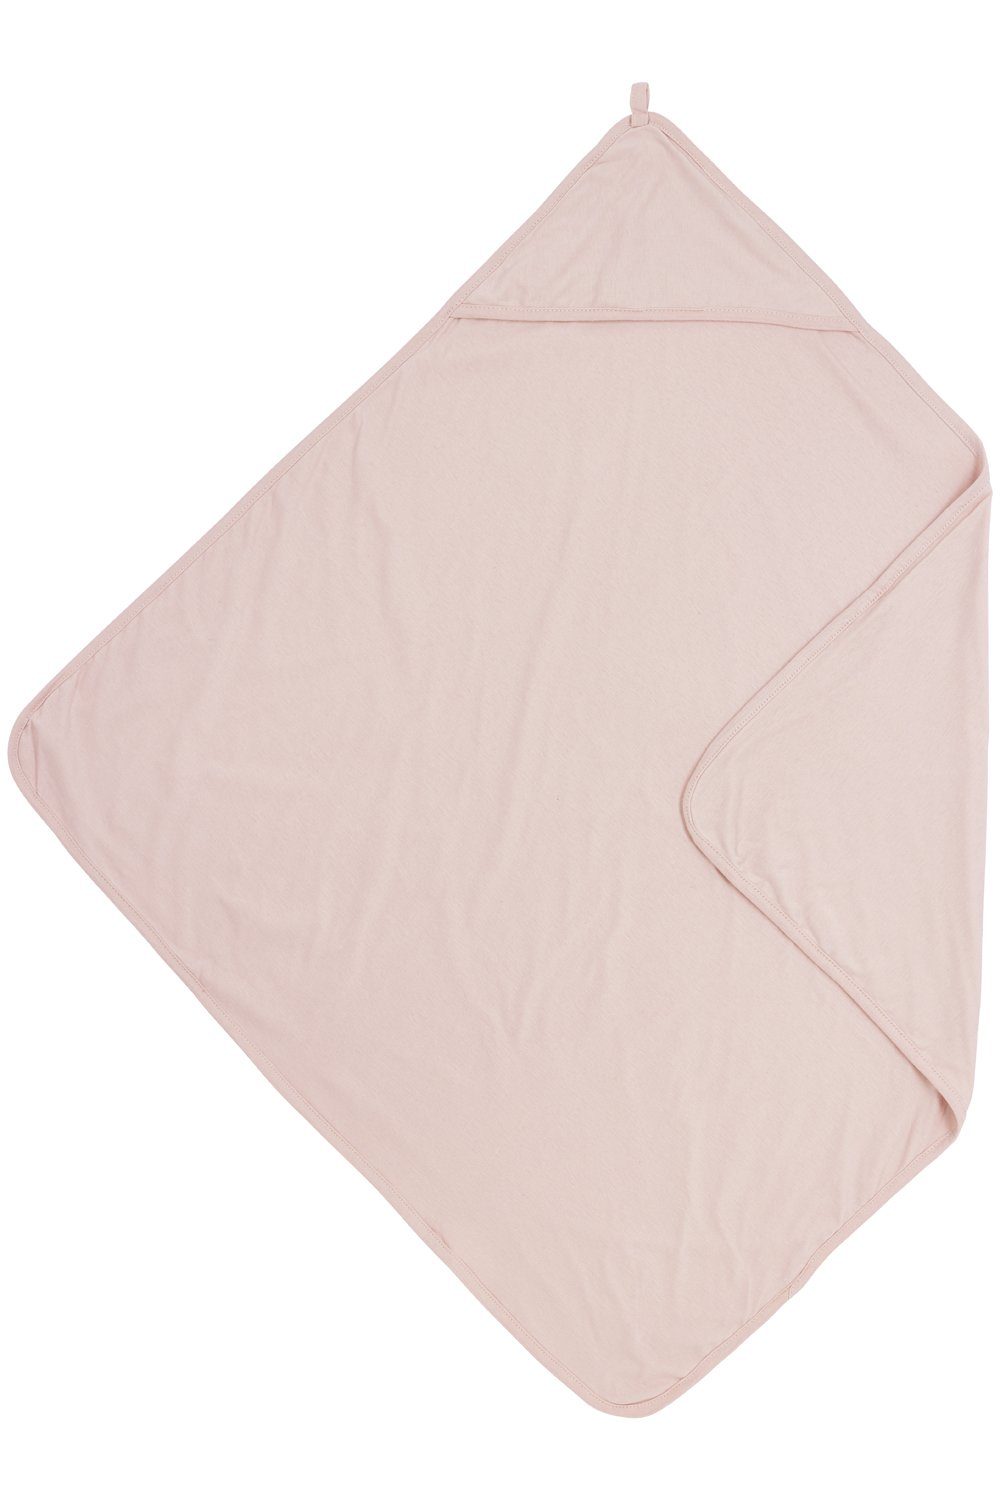 Erstaunlich niedrige Preise Meyco Baby Kapuzenhandtuch Uni Jersey (1-St), Soft Pink, 80x80cm